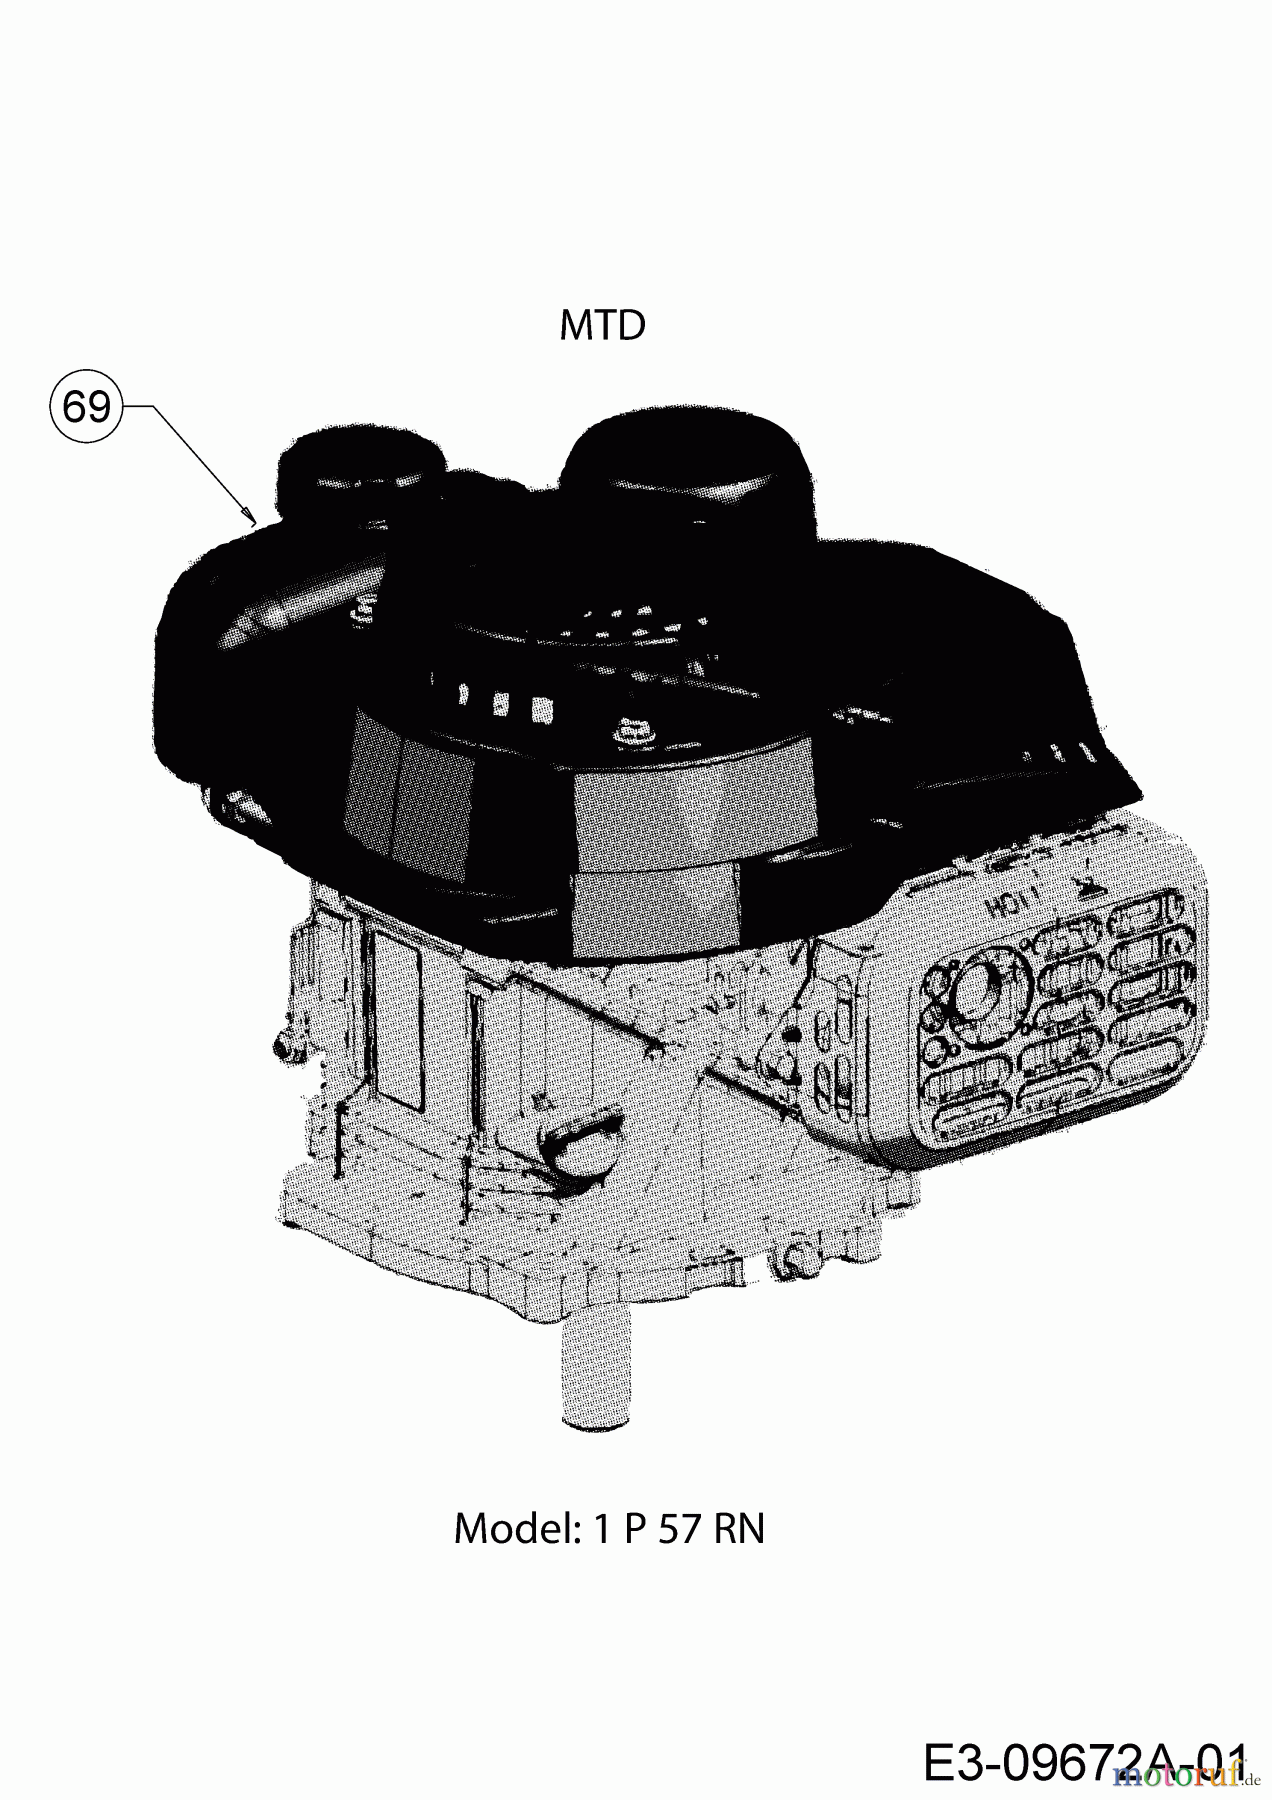  MTD Petrol mower Smart 51 BO 11B-02SH600  (2017) Engine MTD